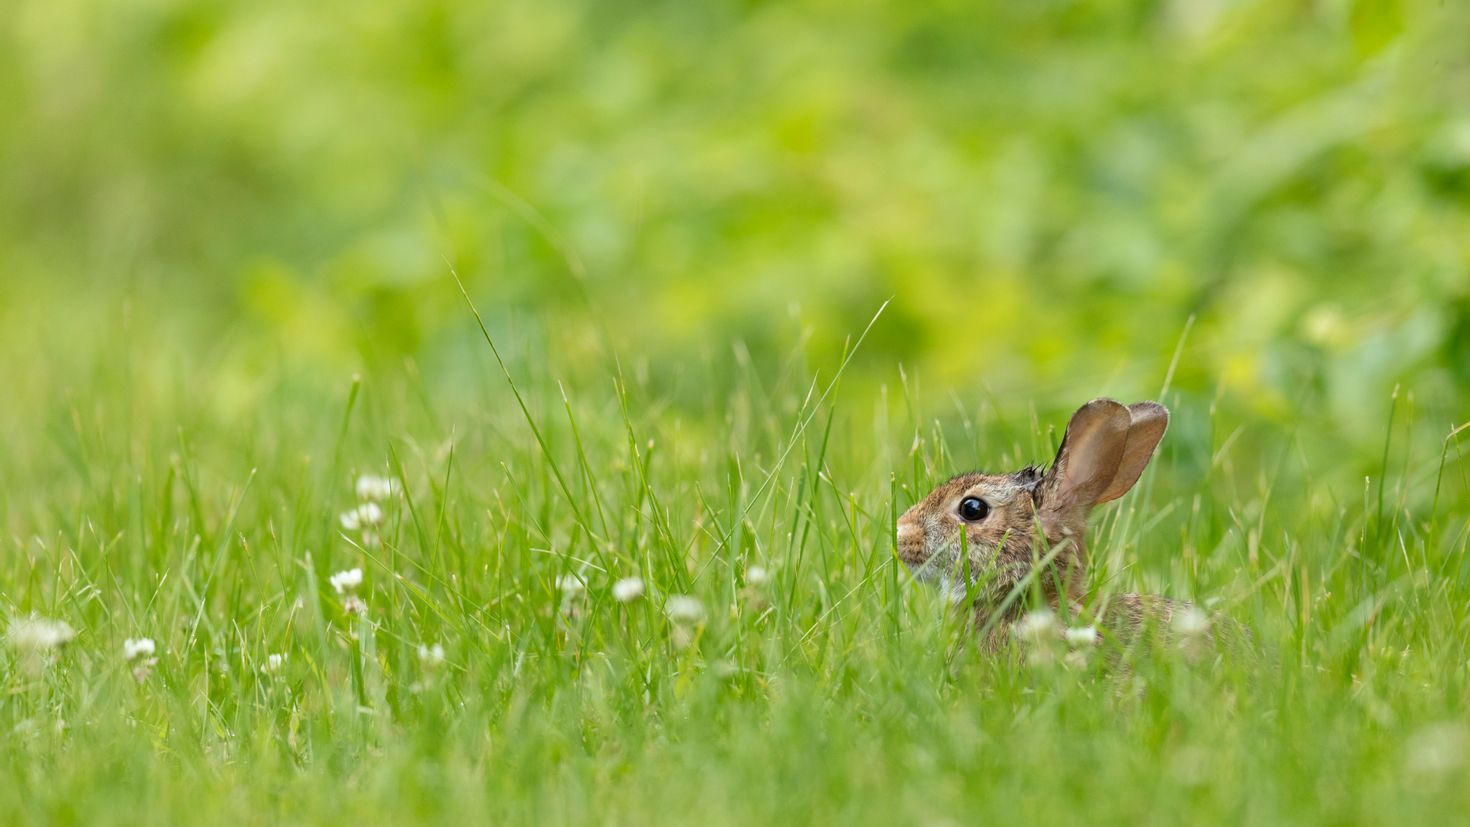 Grass animals. Кролик в траве. Кролик на травке. Красивый кролик в траве. Крольчонок в траве.